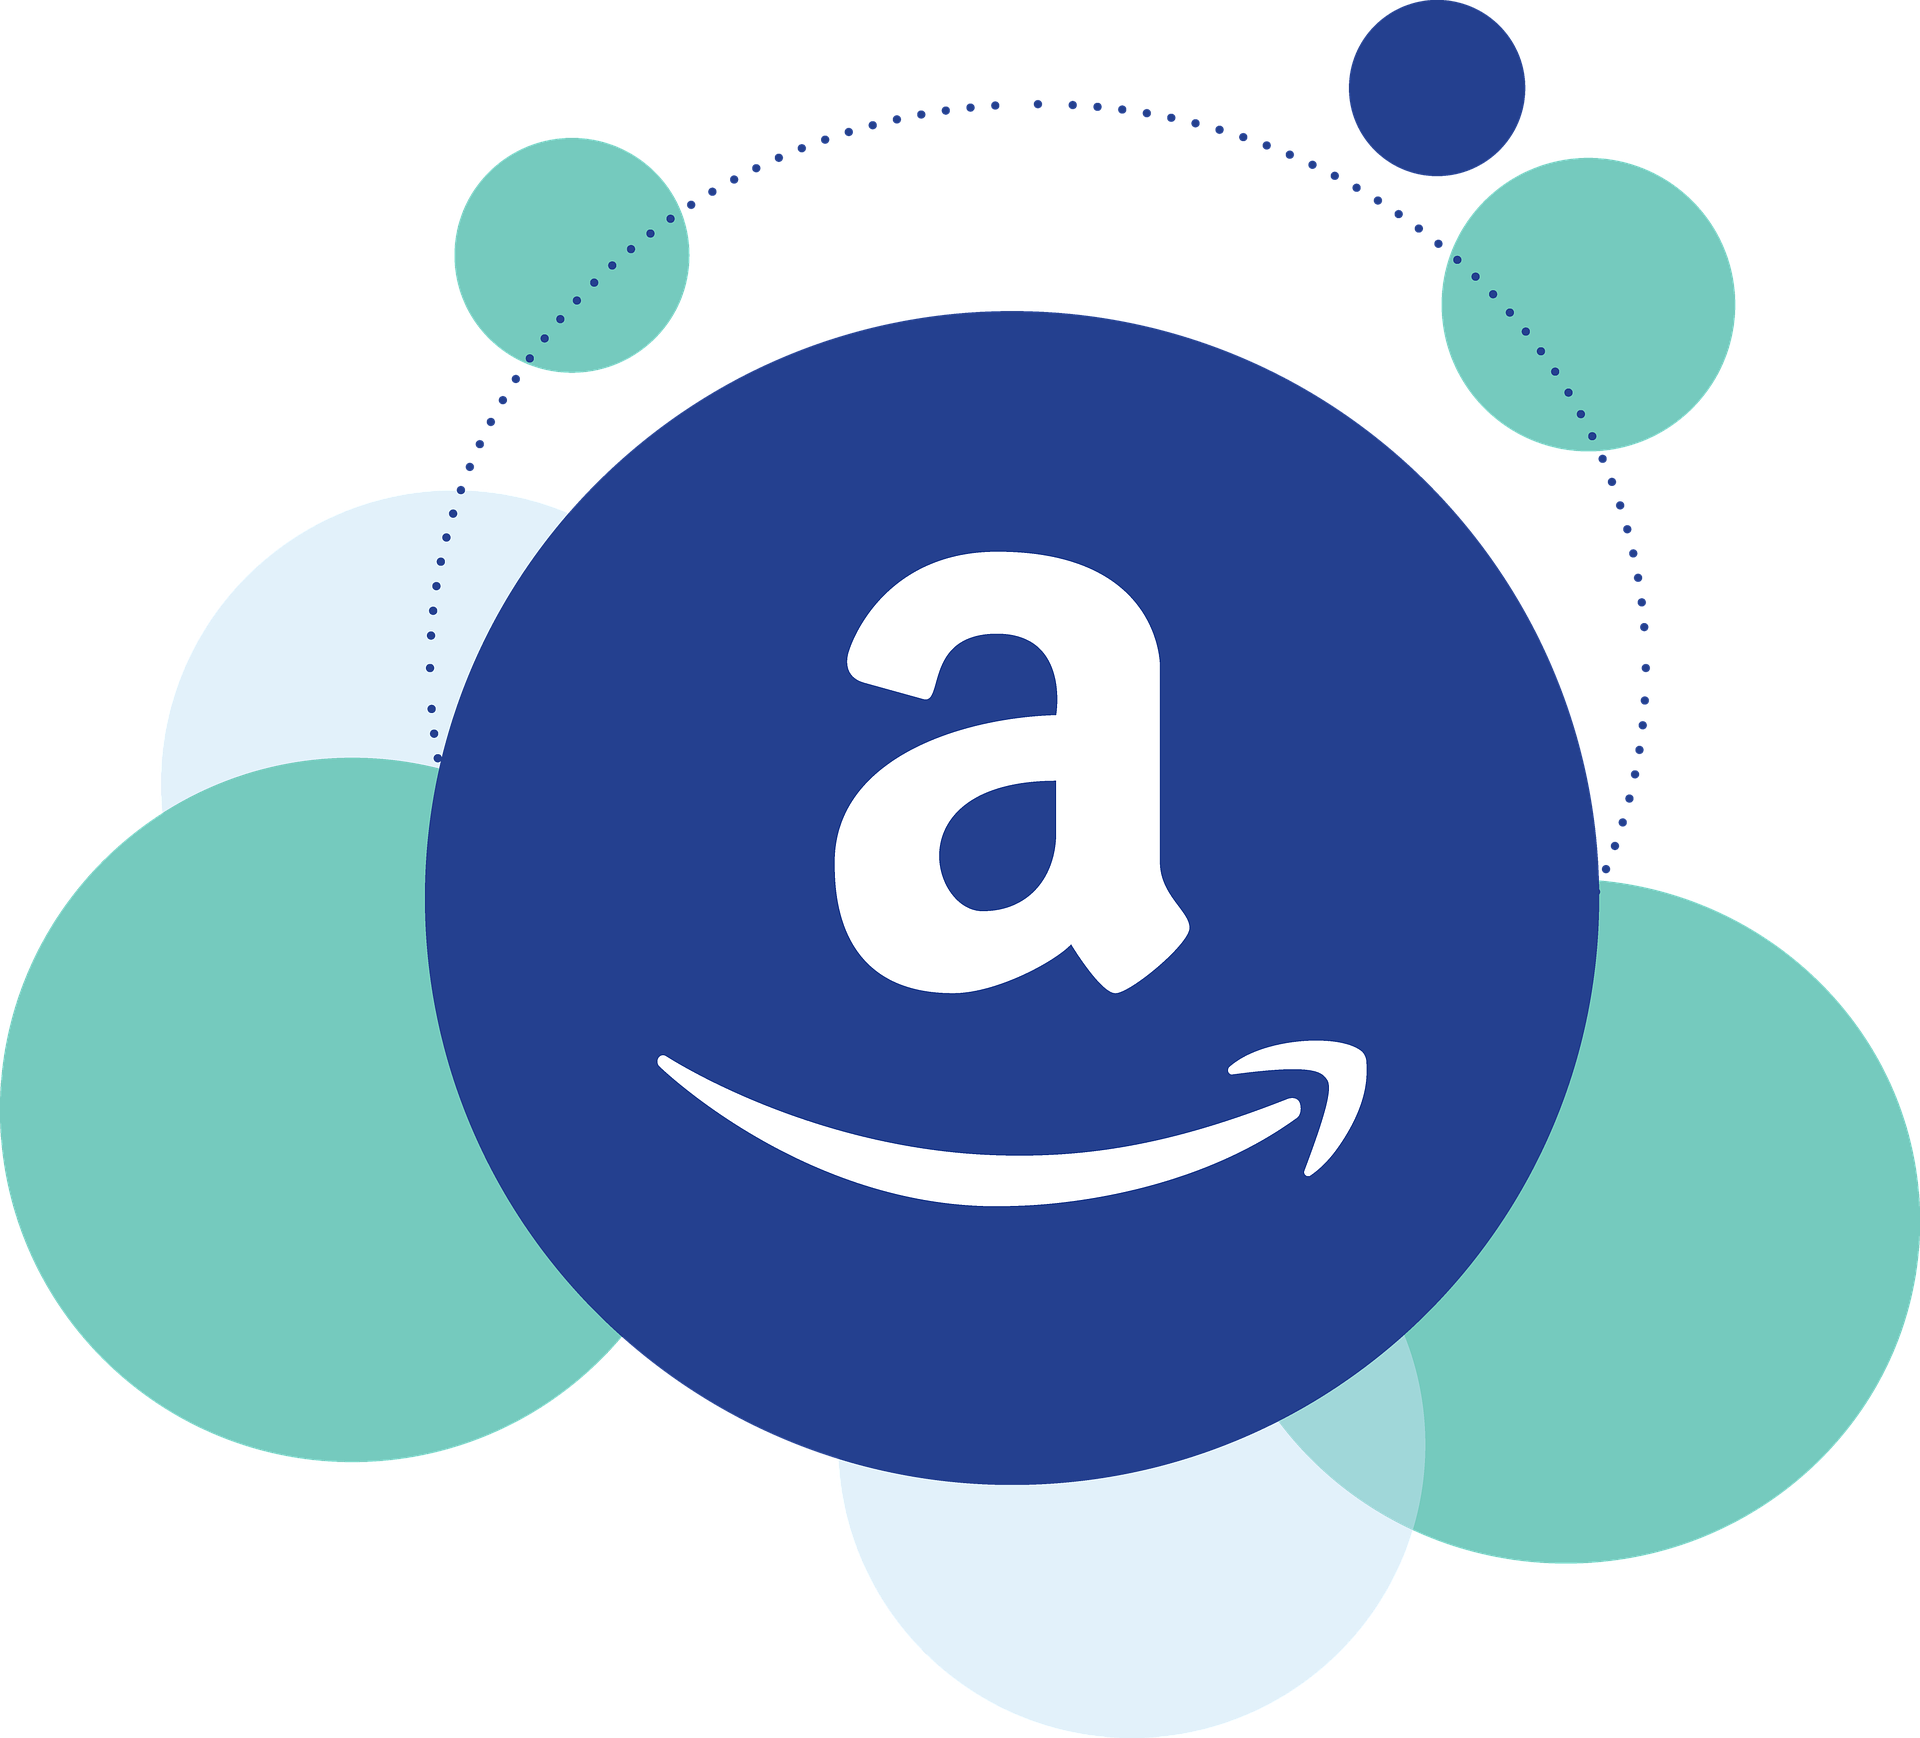 Blocchi catena di approvvigionamento, ma Amazon non subisce il colpo Qual è il segreto? Blocchi catena di approvvigionamento, ma Amazon non subisce il colpo